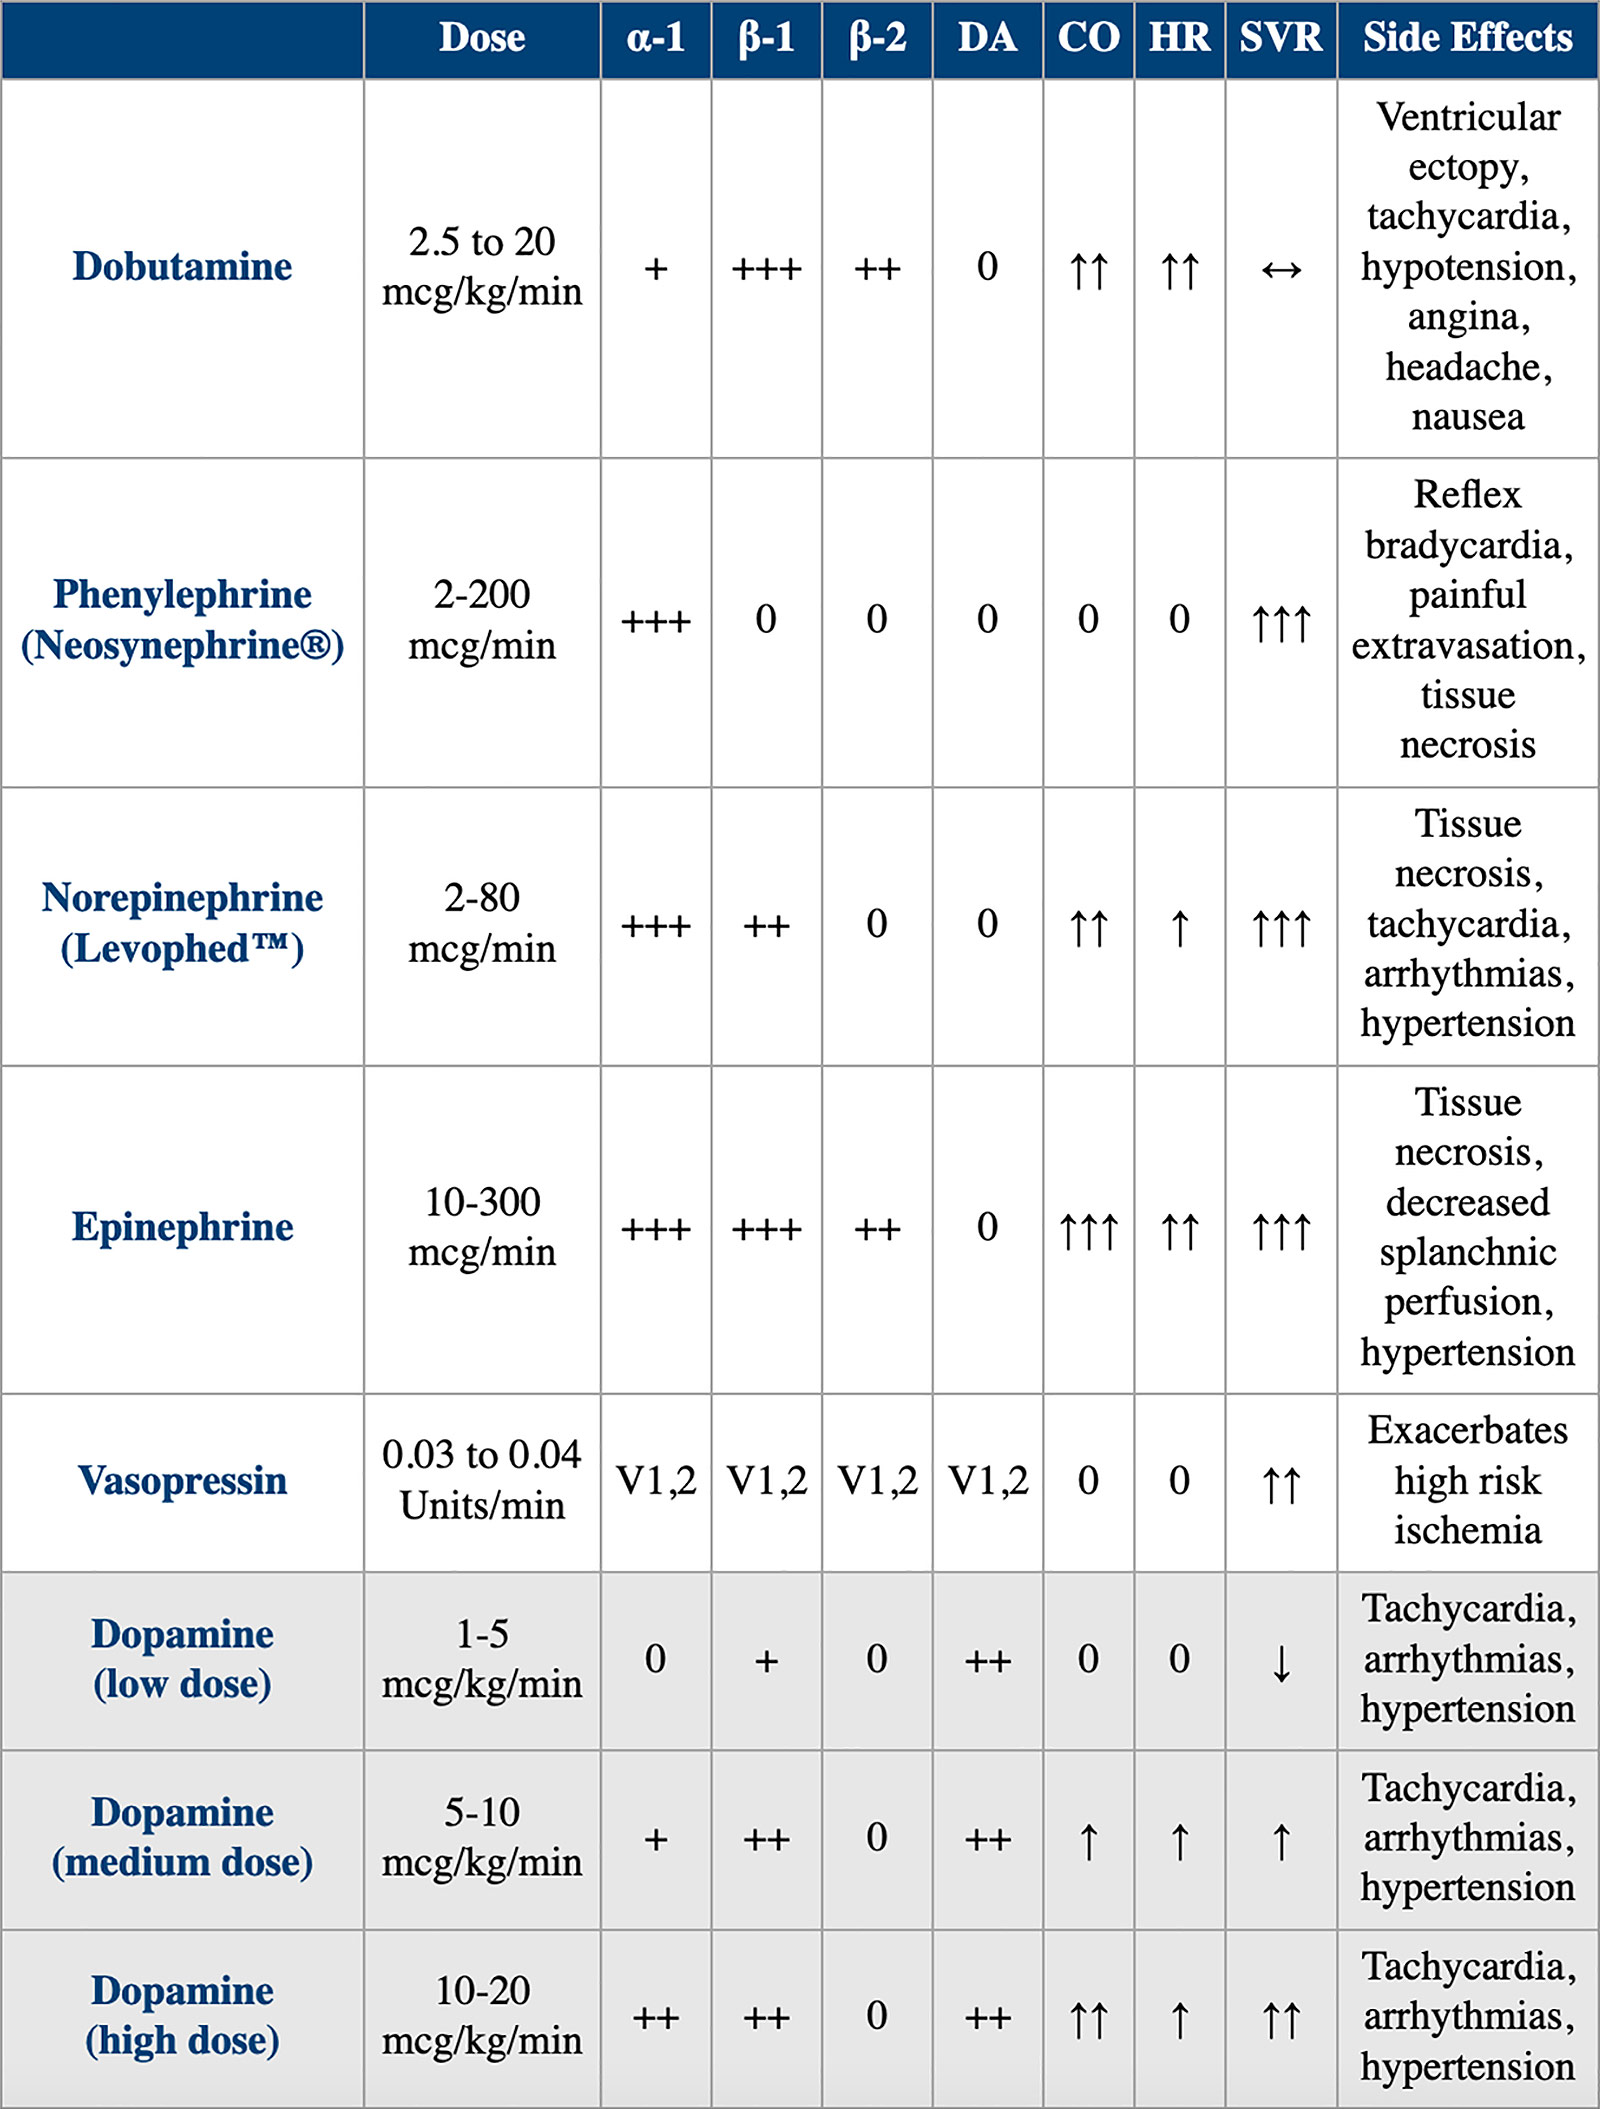 Table 1. Comparison of Dobutamine vs. Alternative Vasoactive Drugs